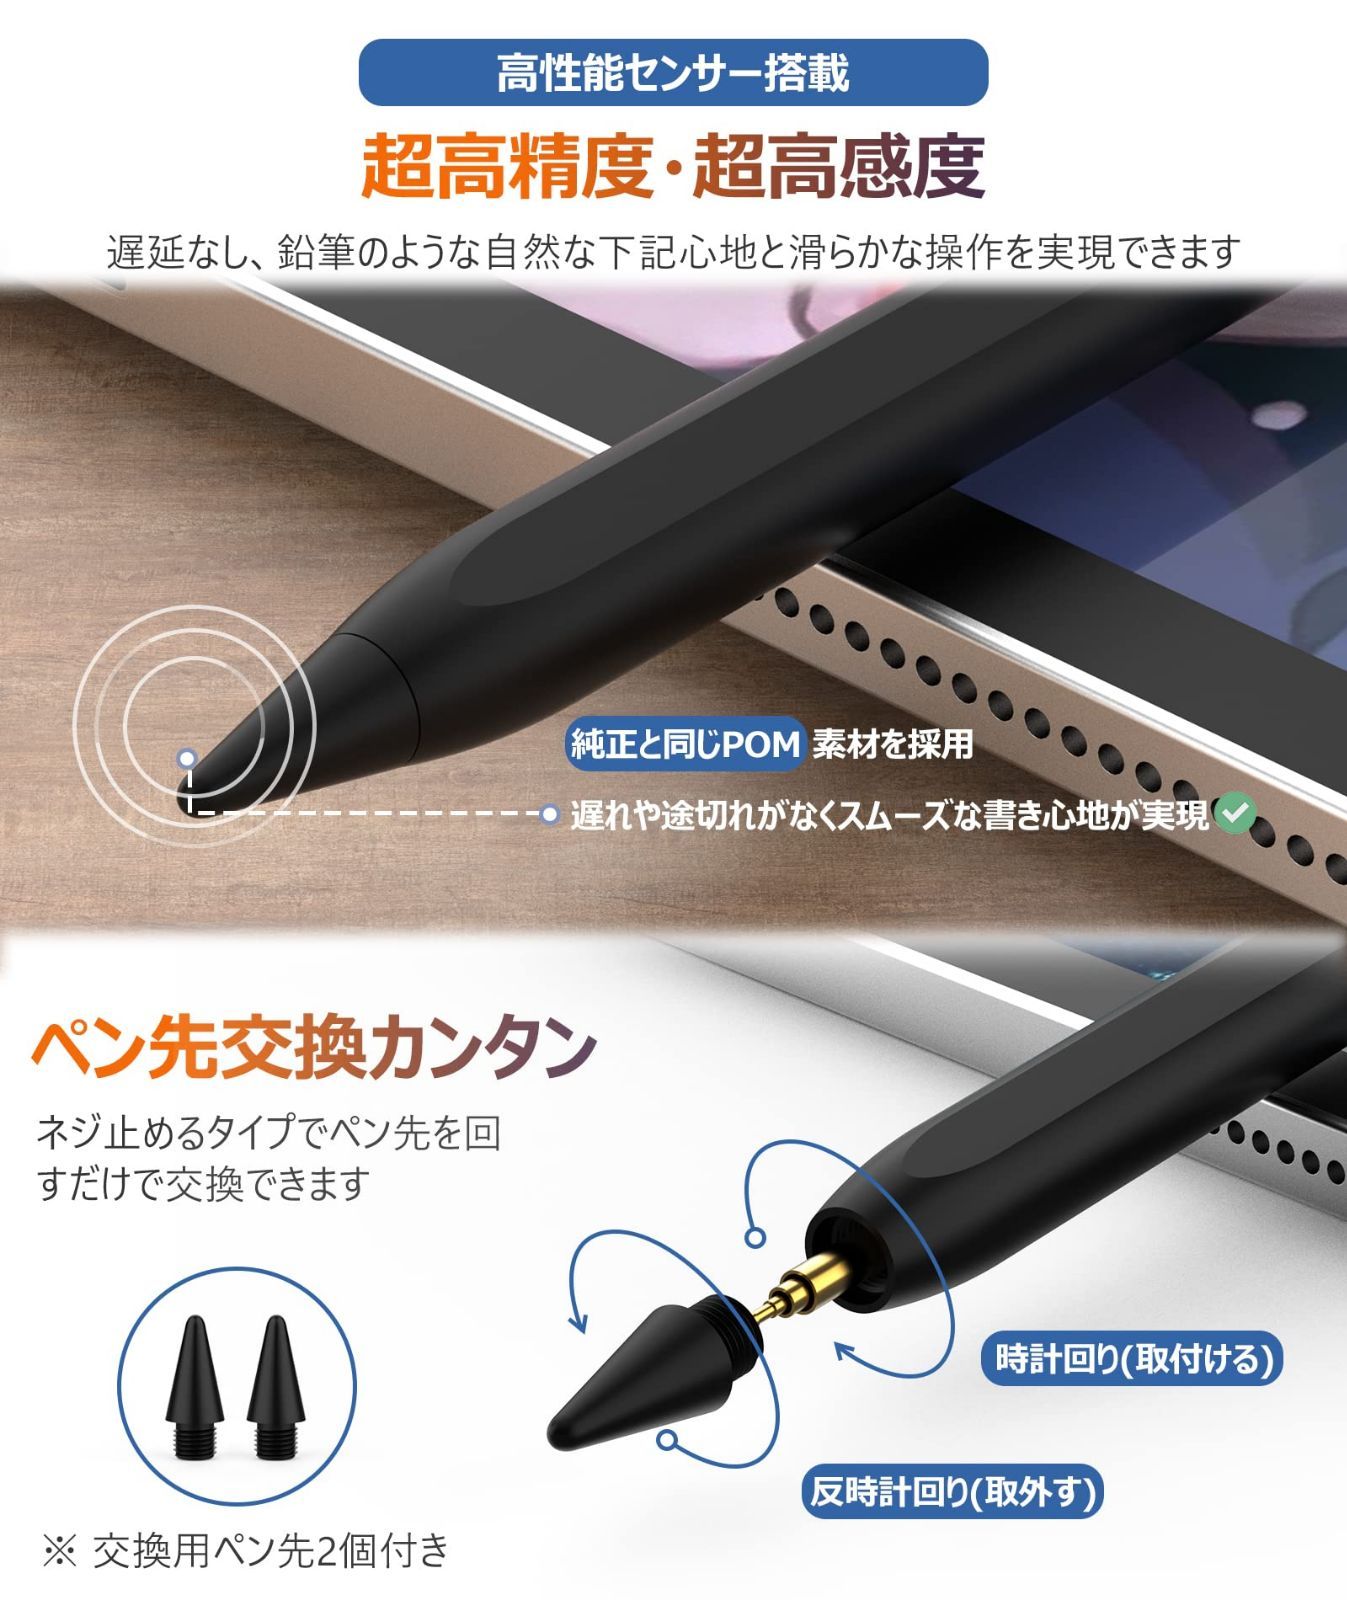 タッチペン iPadペン スタイラスペン 超高感度 傾き感知 誤作動防止